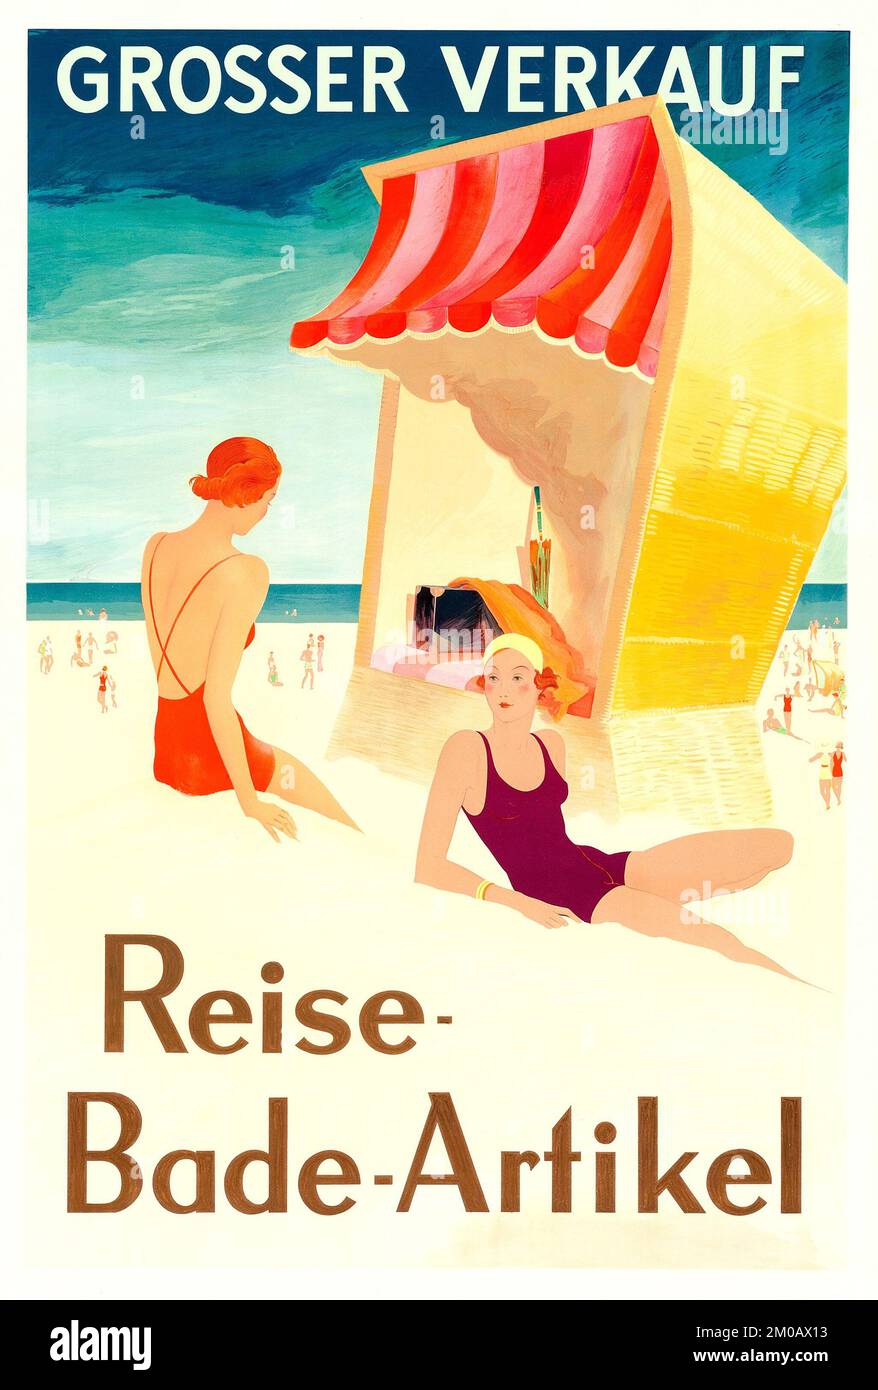 Publicité pour maillot de bain (1930s). Publicité allemande - Grosser Verkauf - Reise Bade-Artikel Banque D'Images